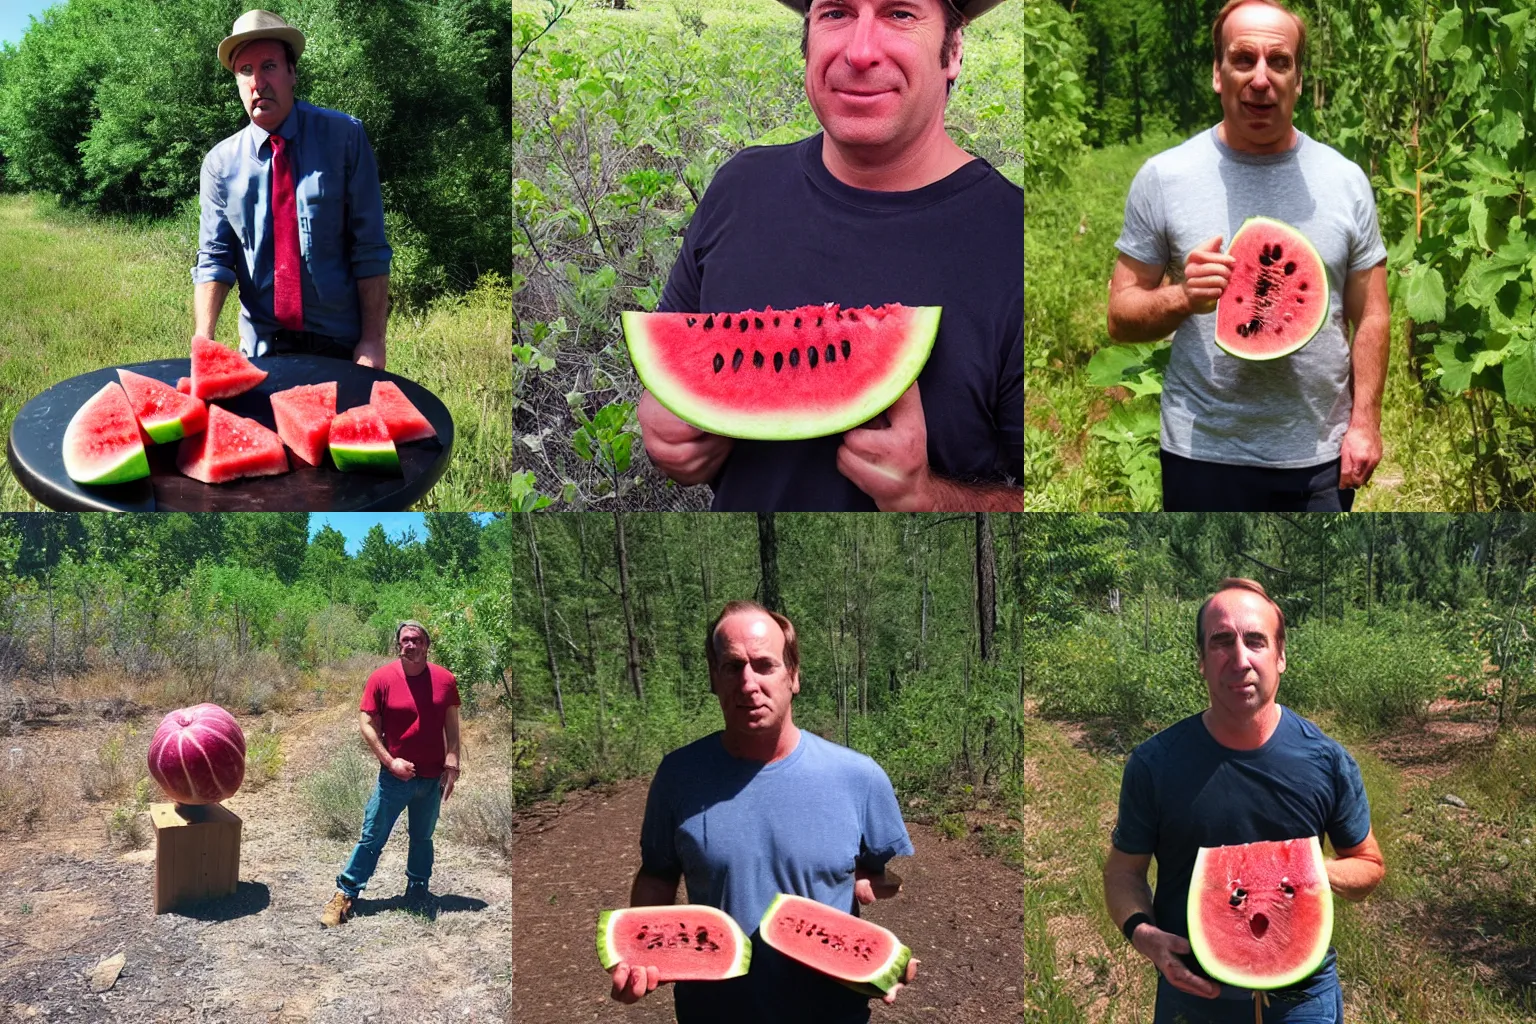 Prompt: Saul Goodman eats watermelon trail cam